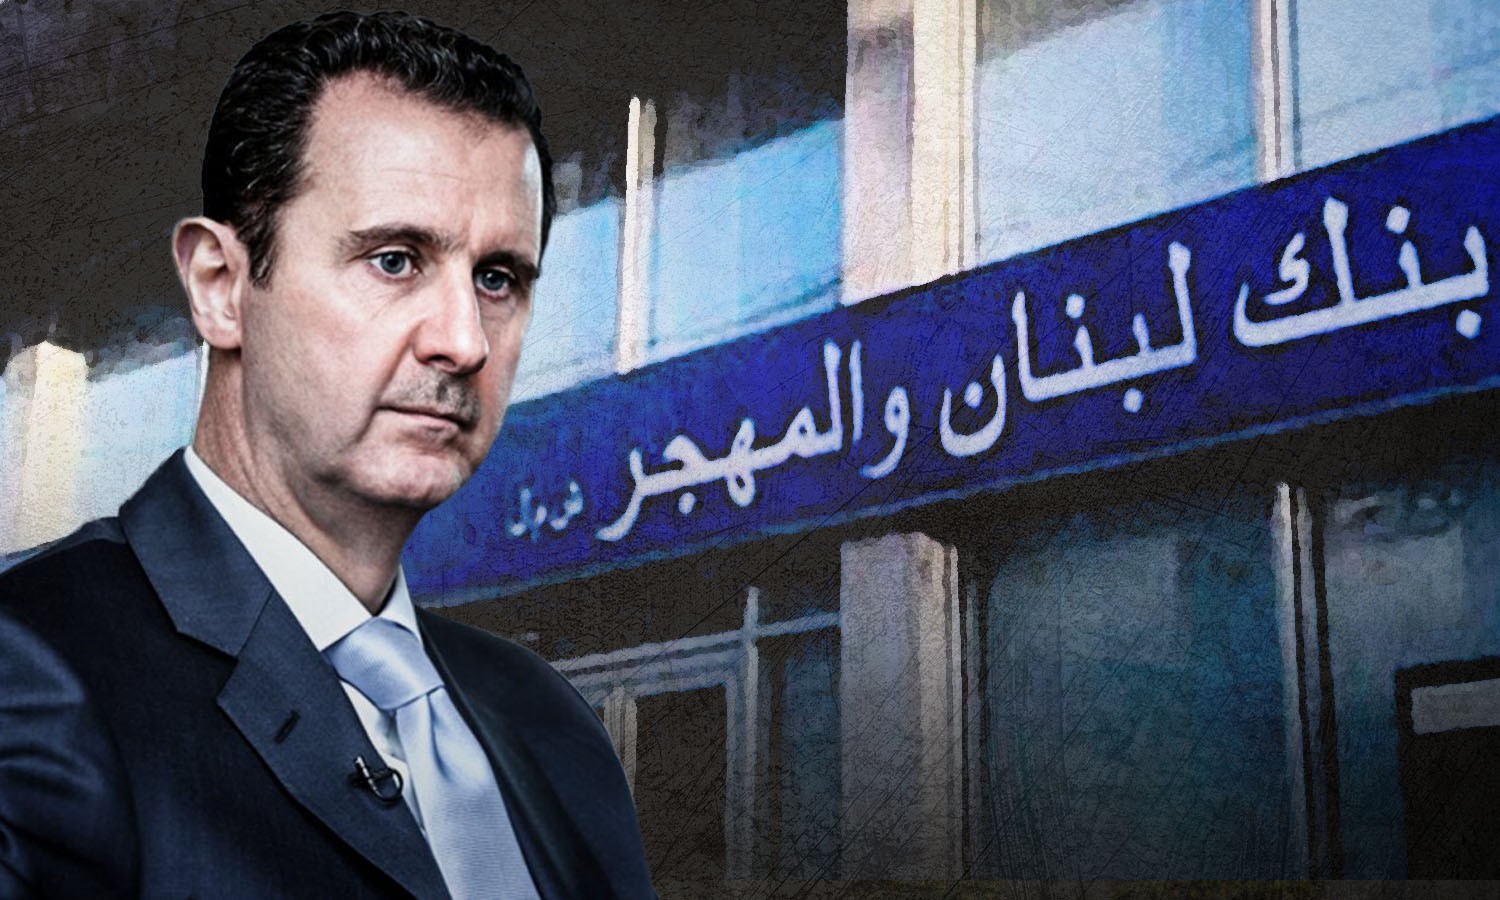 بشار الأسد الذي يحب المال كثيرا 